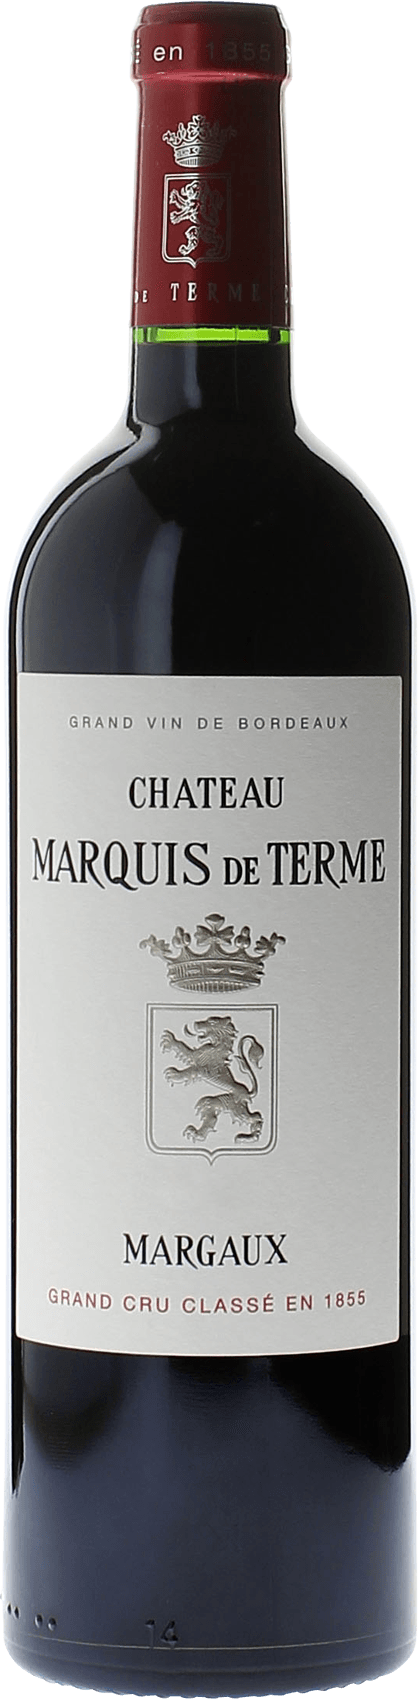 Marquis de terme 2013 4me Grand cru class Margaux, Bordeaux rouge